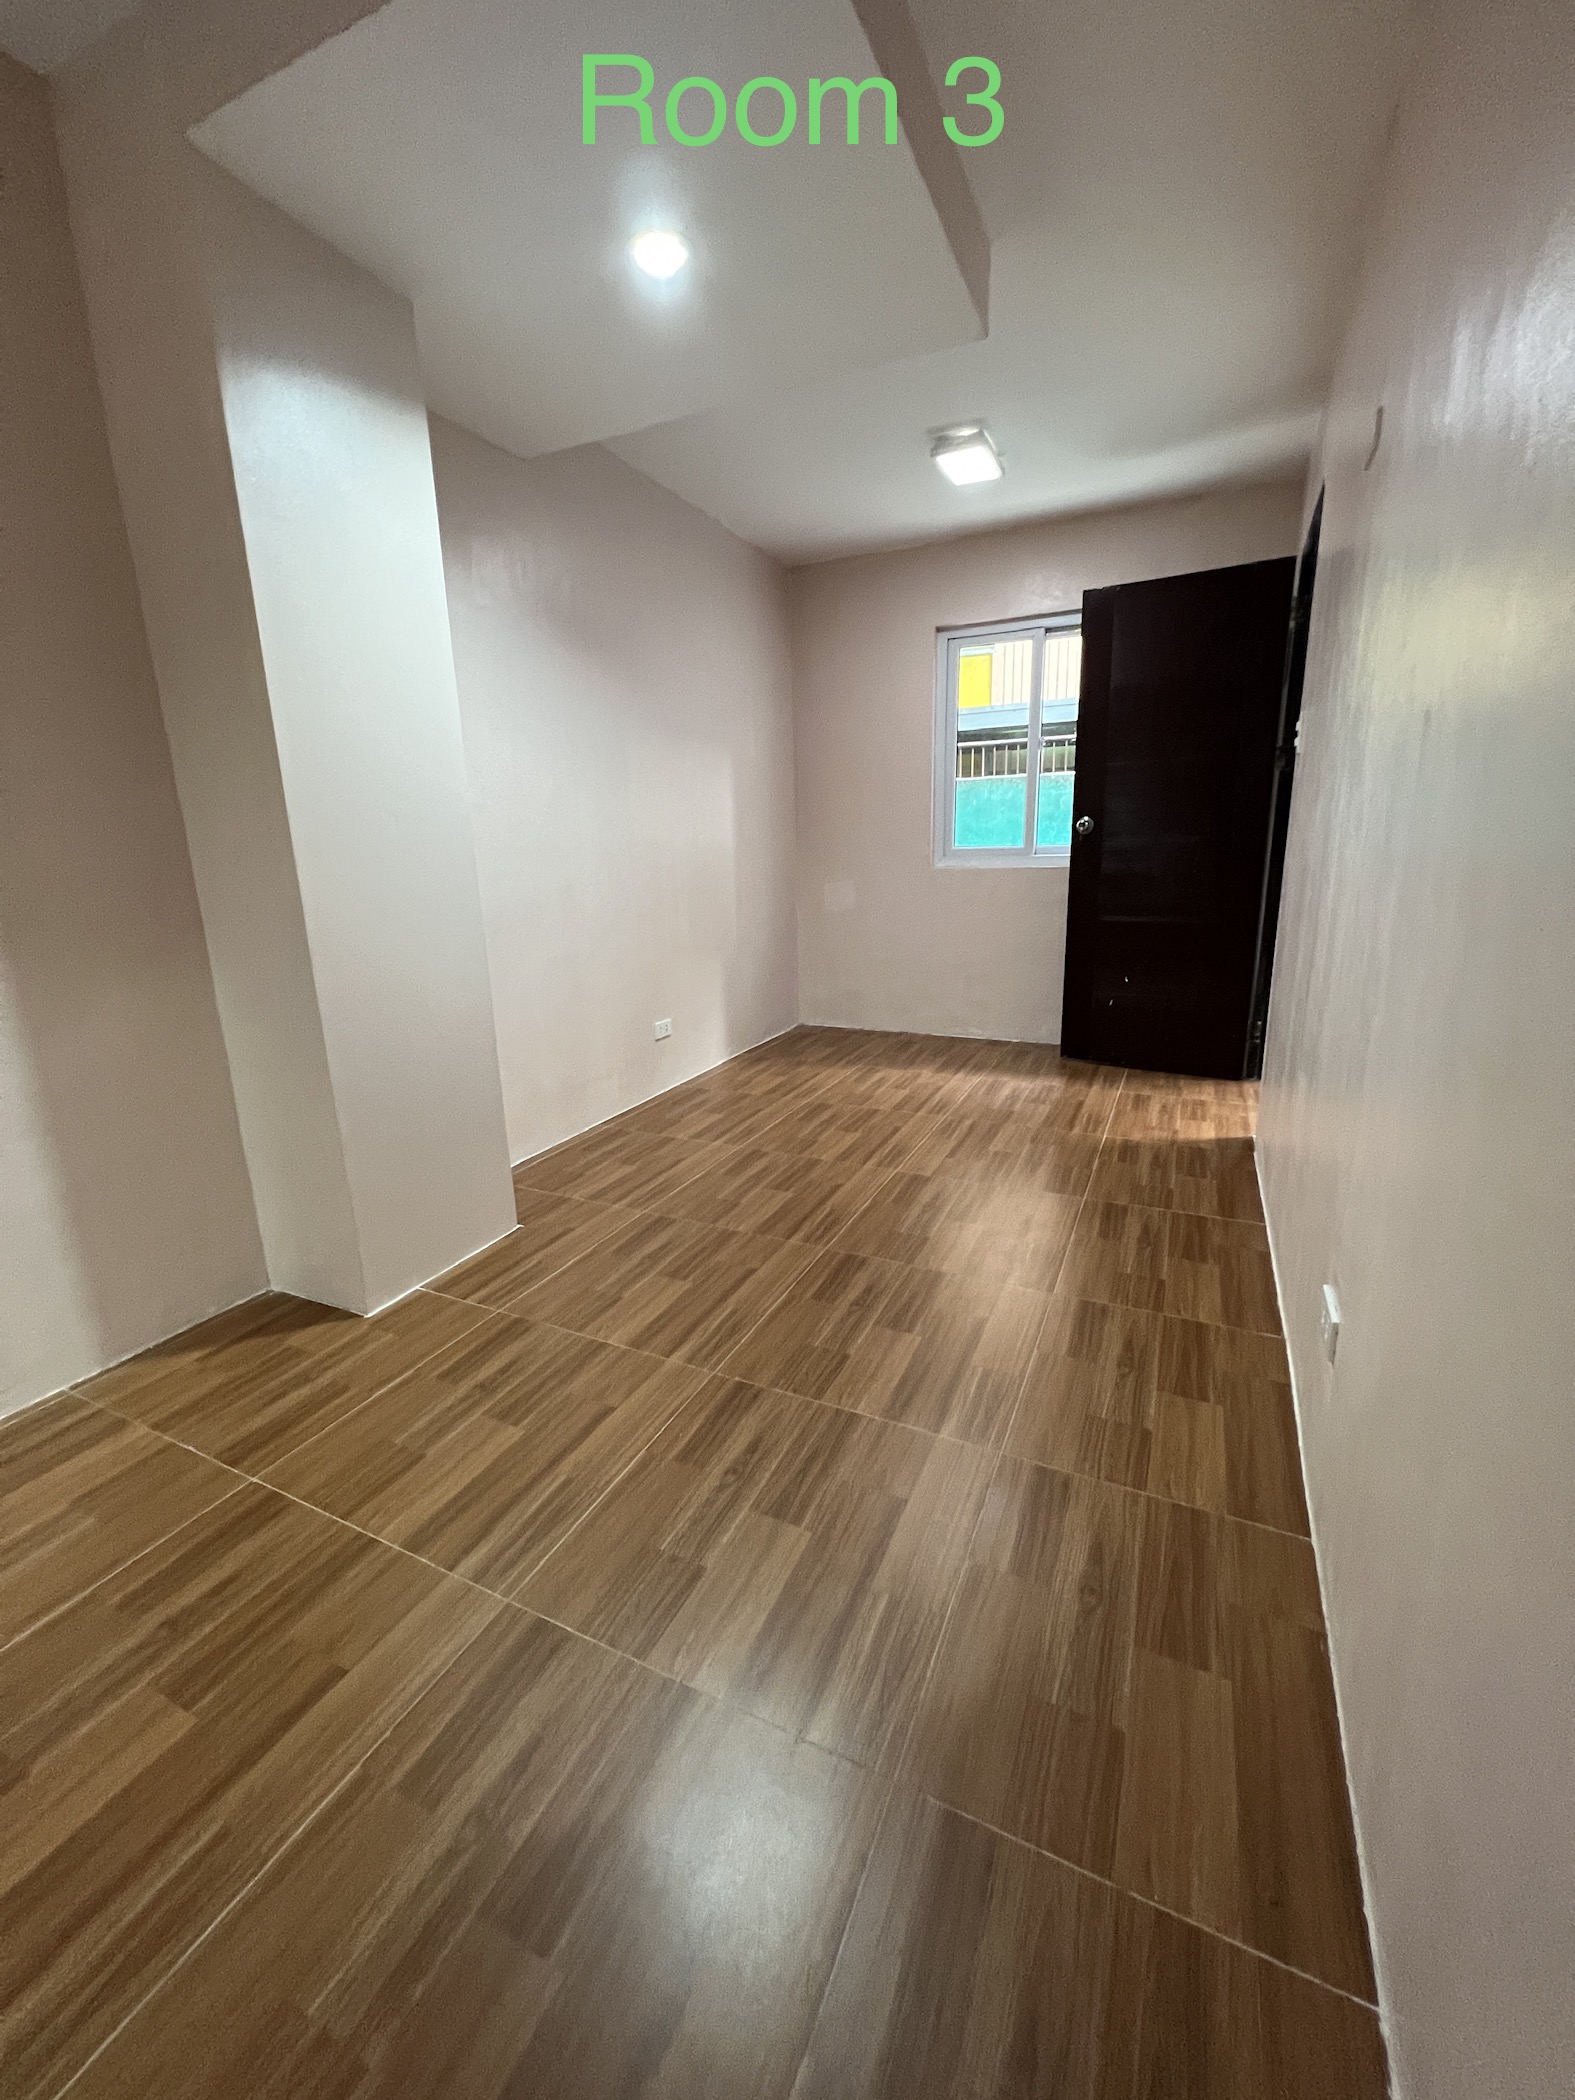 Room For Rent – Studio Type